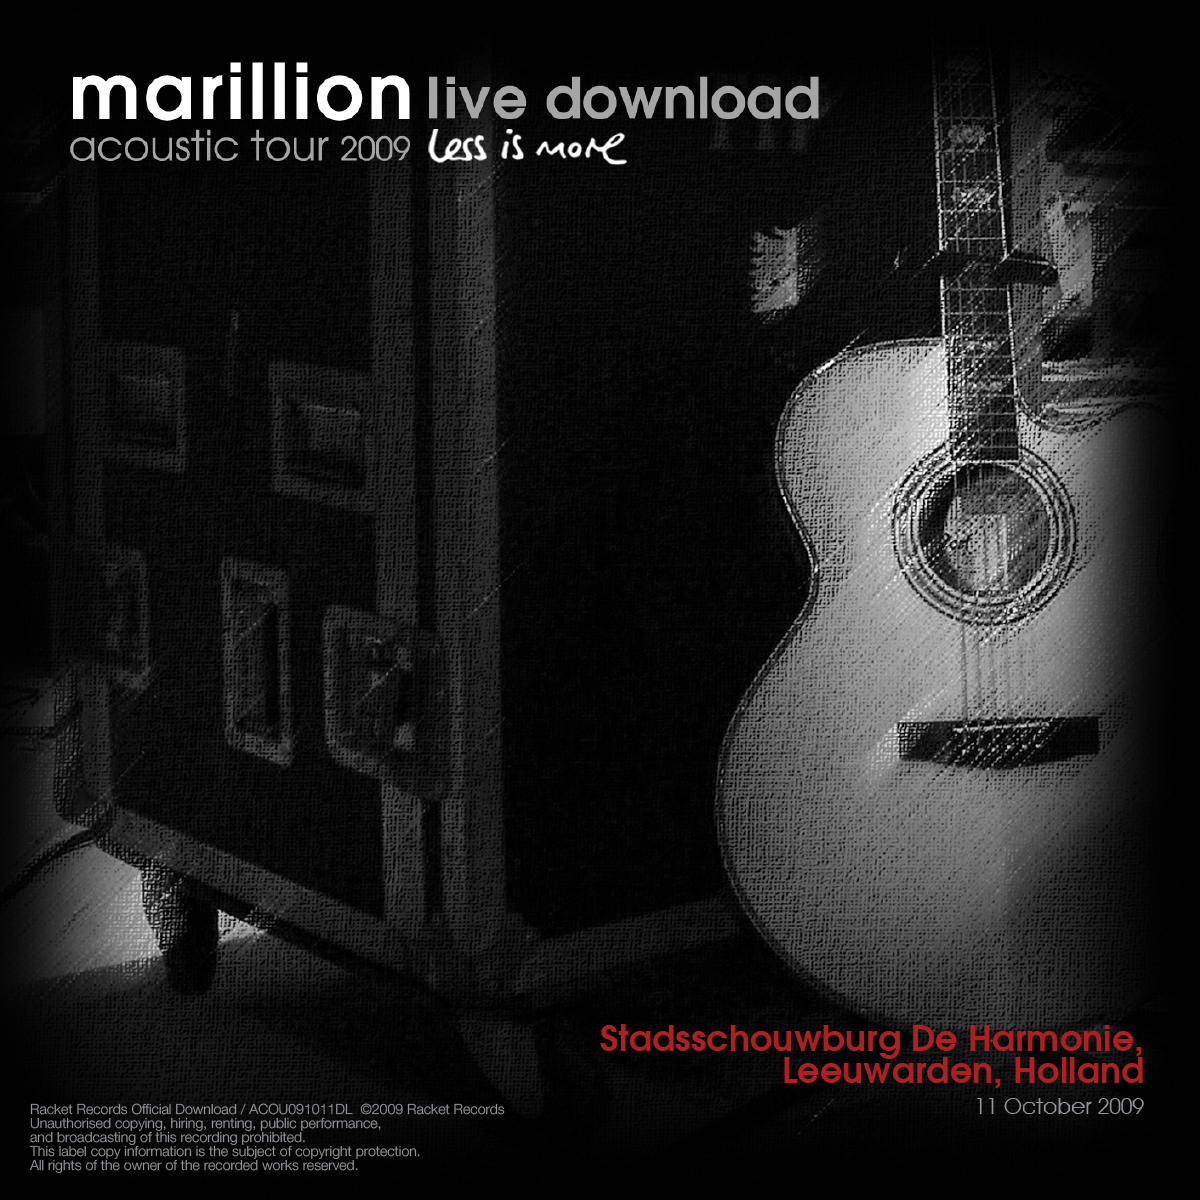 De Harmonie, Leeuwarden, NL<br>11th October 2009 Live Download 256kbps